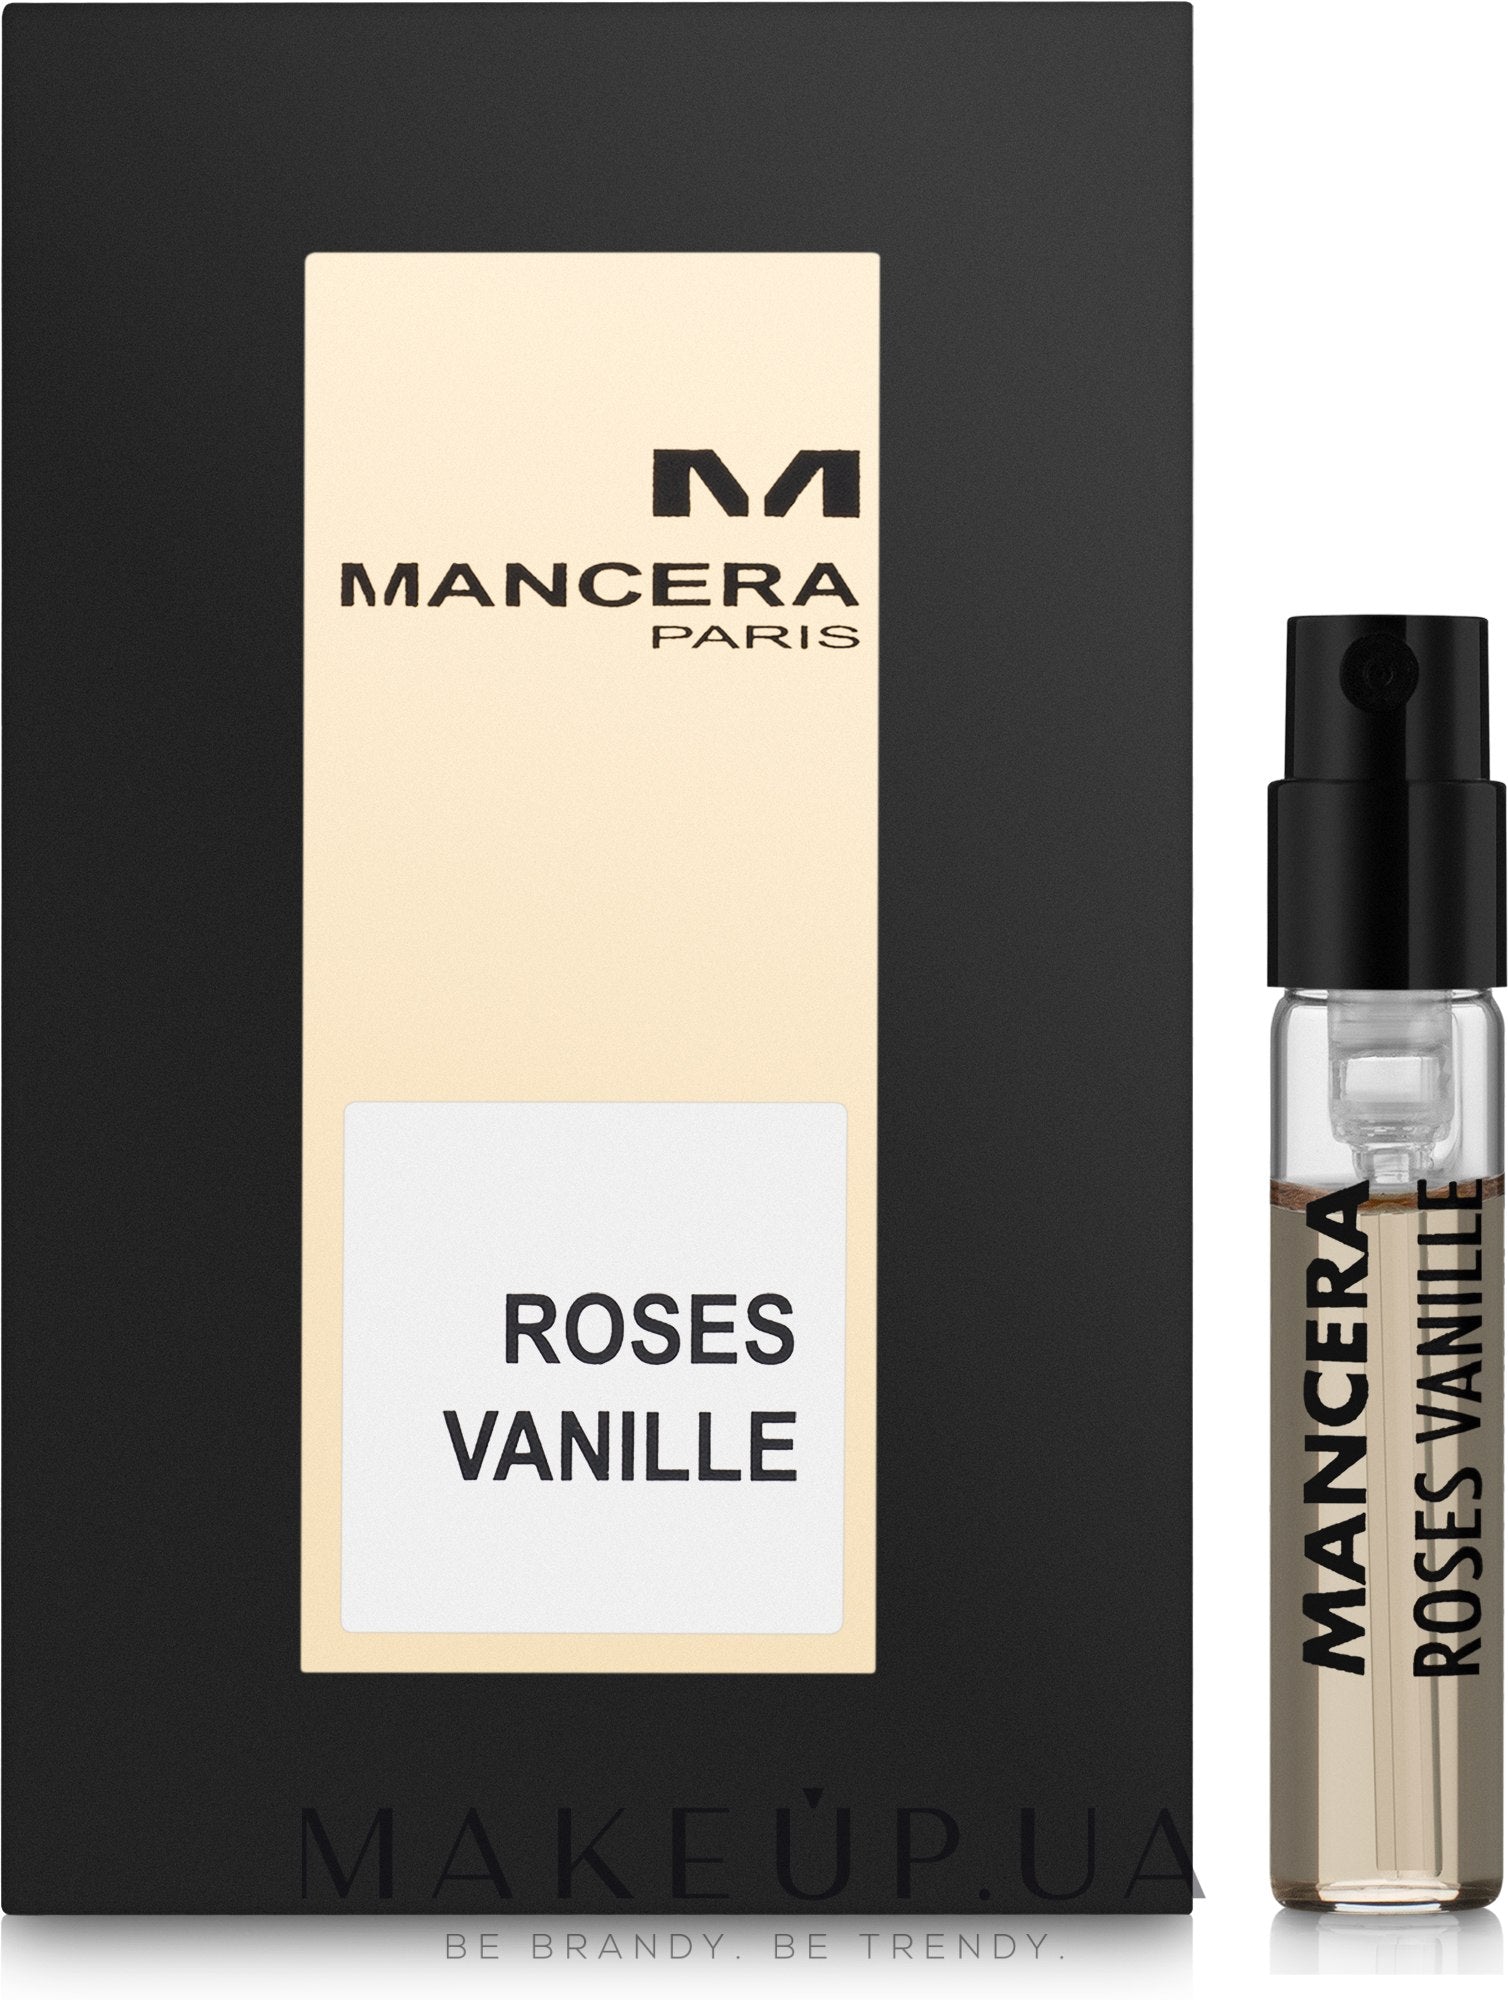 만세 라 Roses Vanille 샘플-Mancera Roses Vanille-Mancera-2ml 공식 샘플-creed향수 샘플